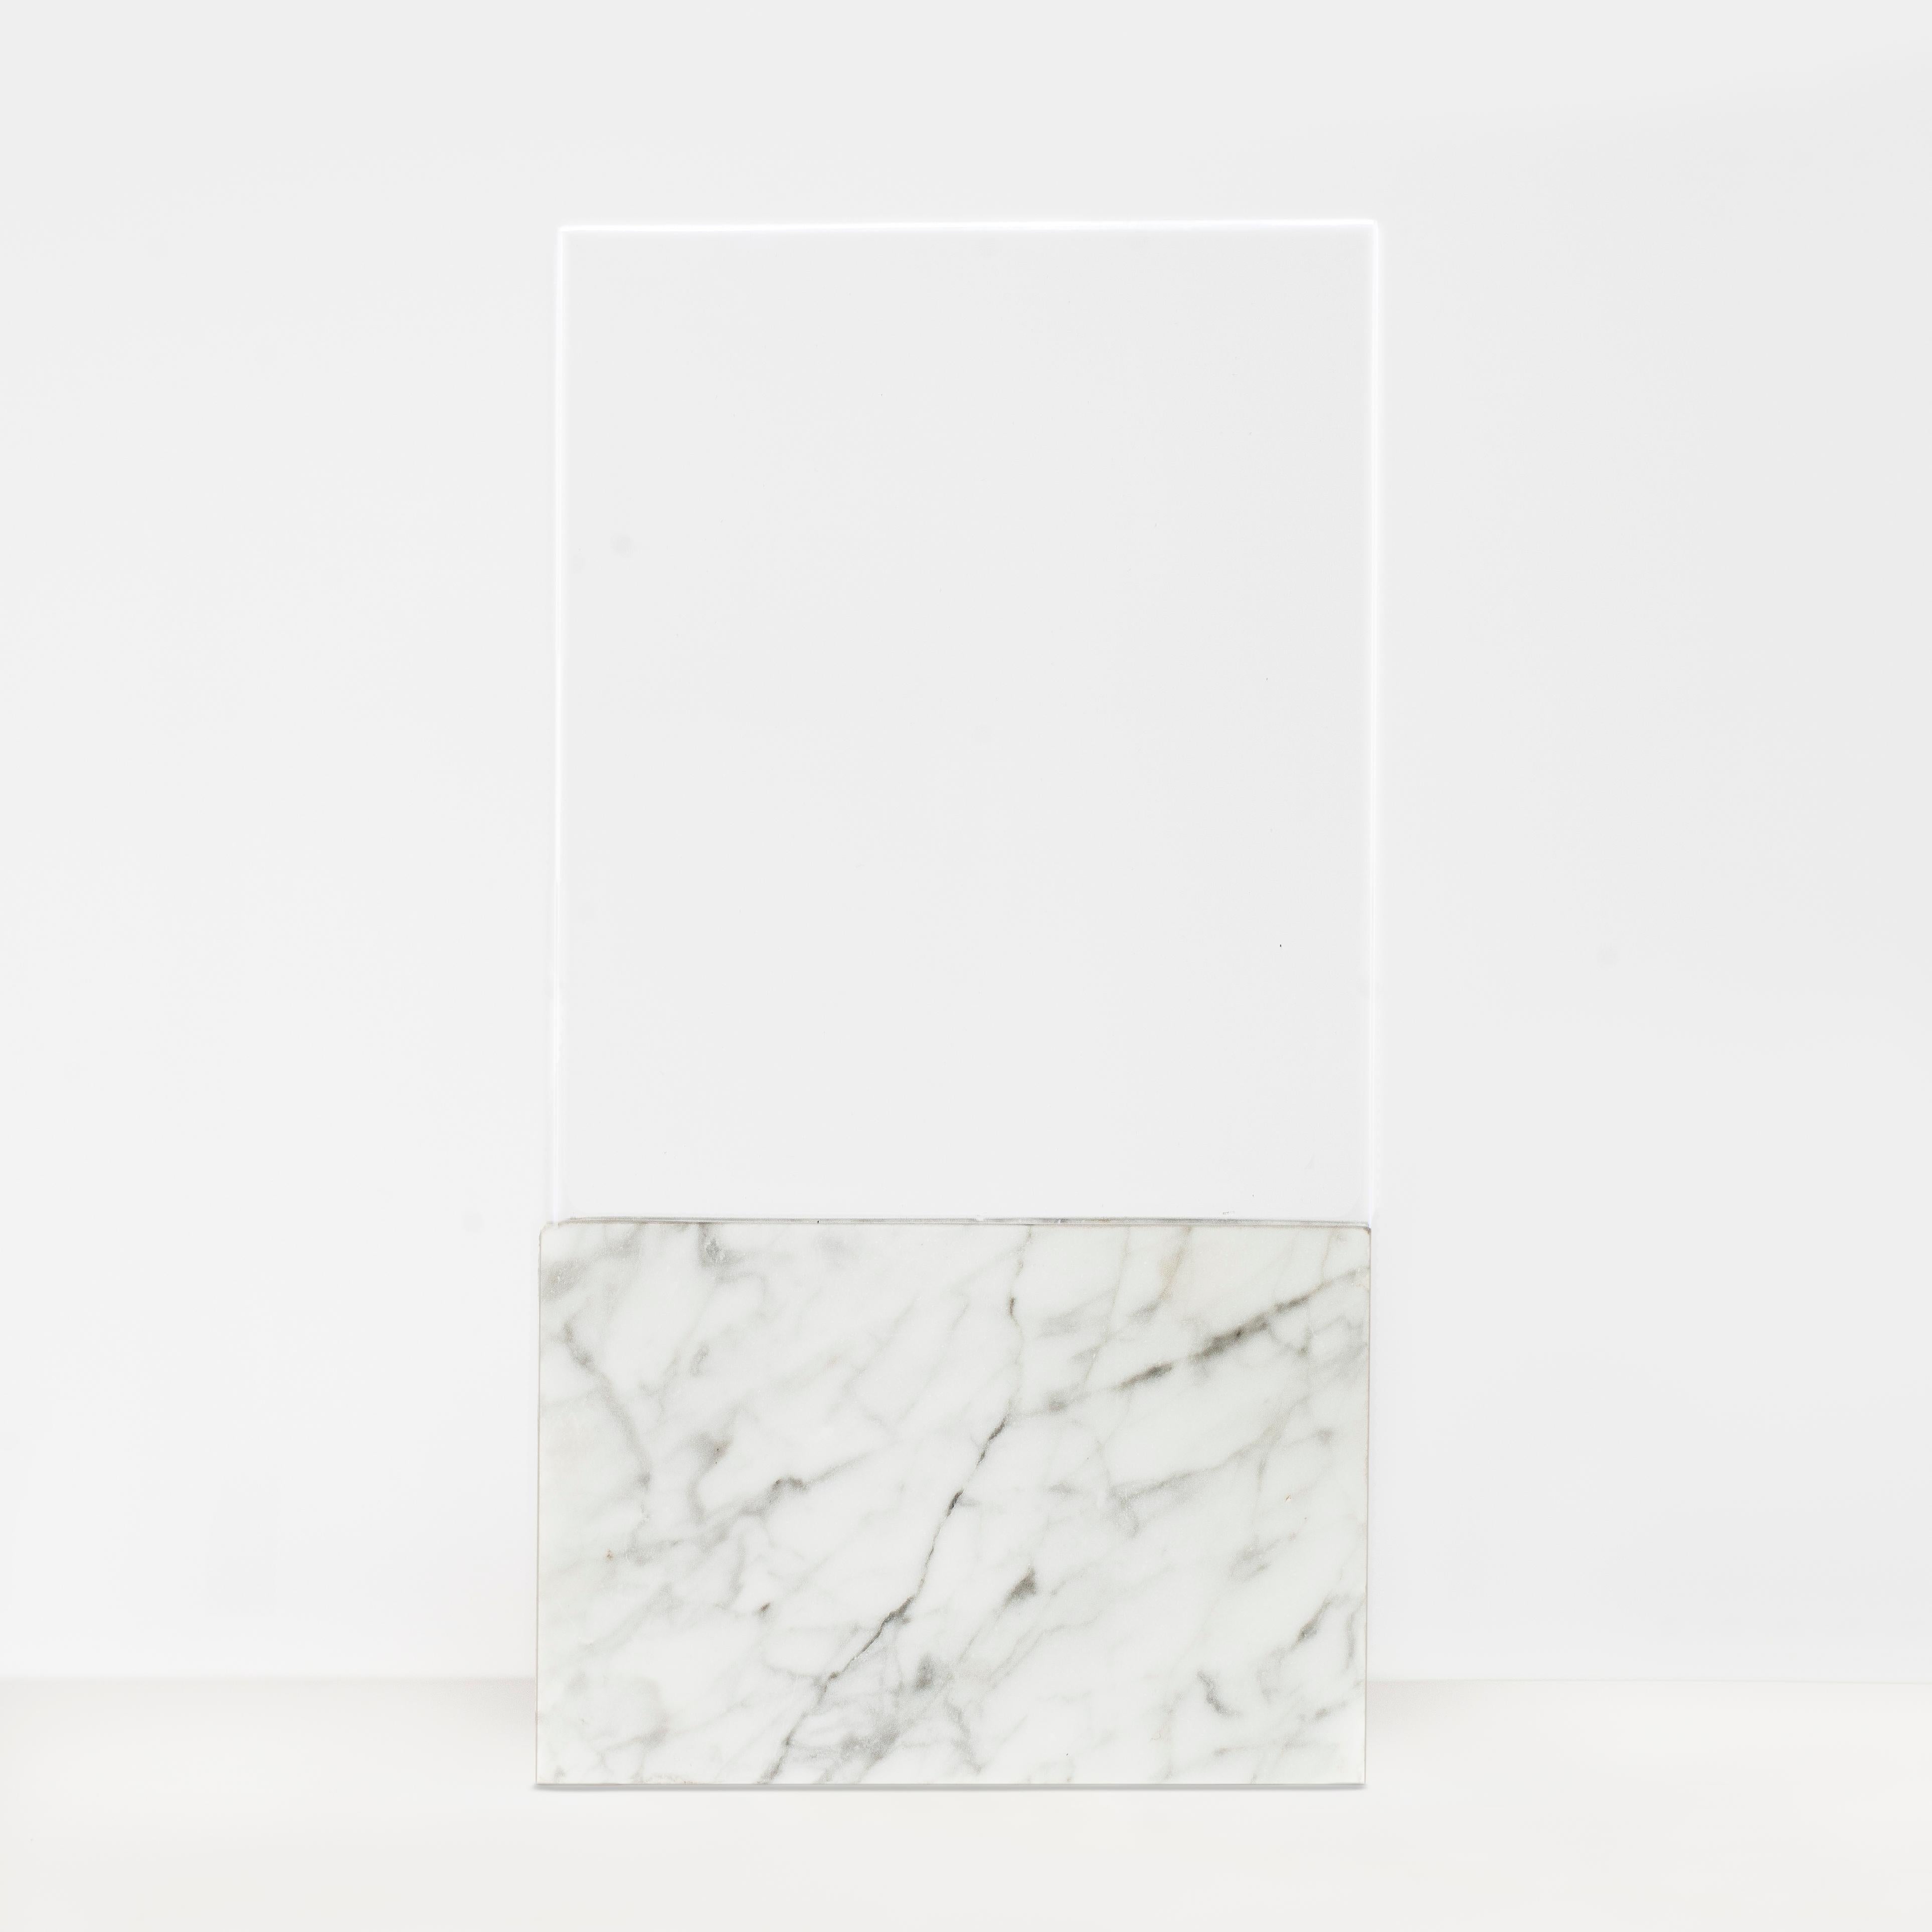 Lampe de table Horizon noir, verre et marbre de Carlos Aucejo
Dimensions : 36 x 19 x 7 cm
MATERIAL : Verre et marbre, (Existe en Marquina (noir) et Carrara (blanc)). 

Dans cette pièce, nous essayons de créer une atmosphère lumineuse dans l'espace